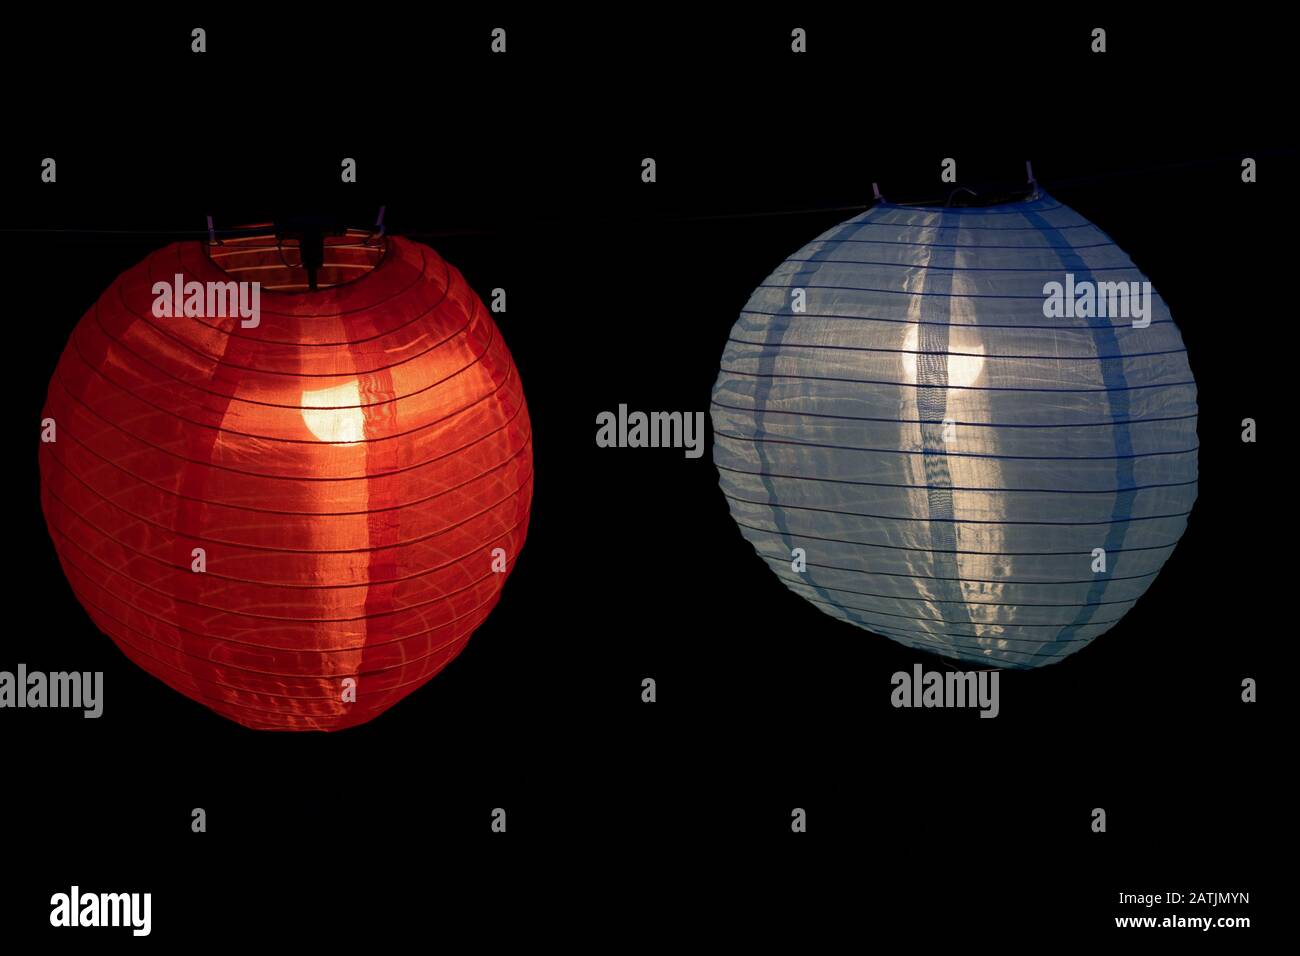 Lanterne cinesi illuminate di notte, lanterna rossa e blu in tessuto e filo con lampadina interna Foto Stock